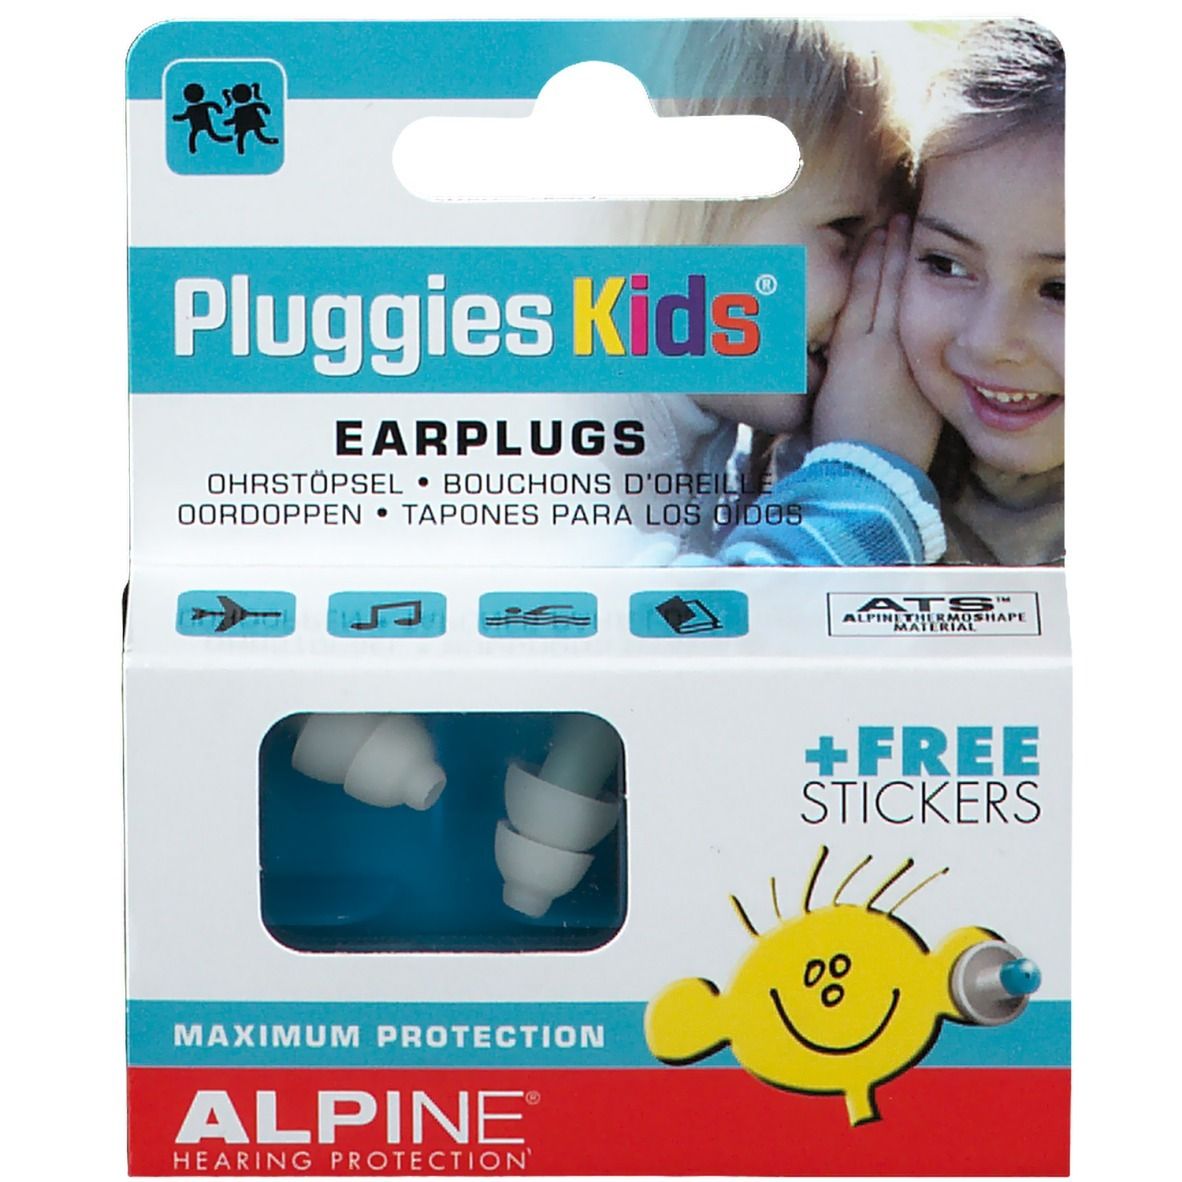 Alpine® Pluggies Kids®